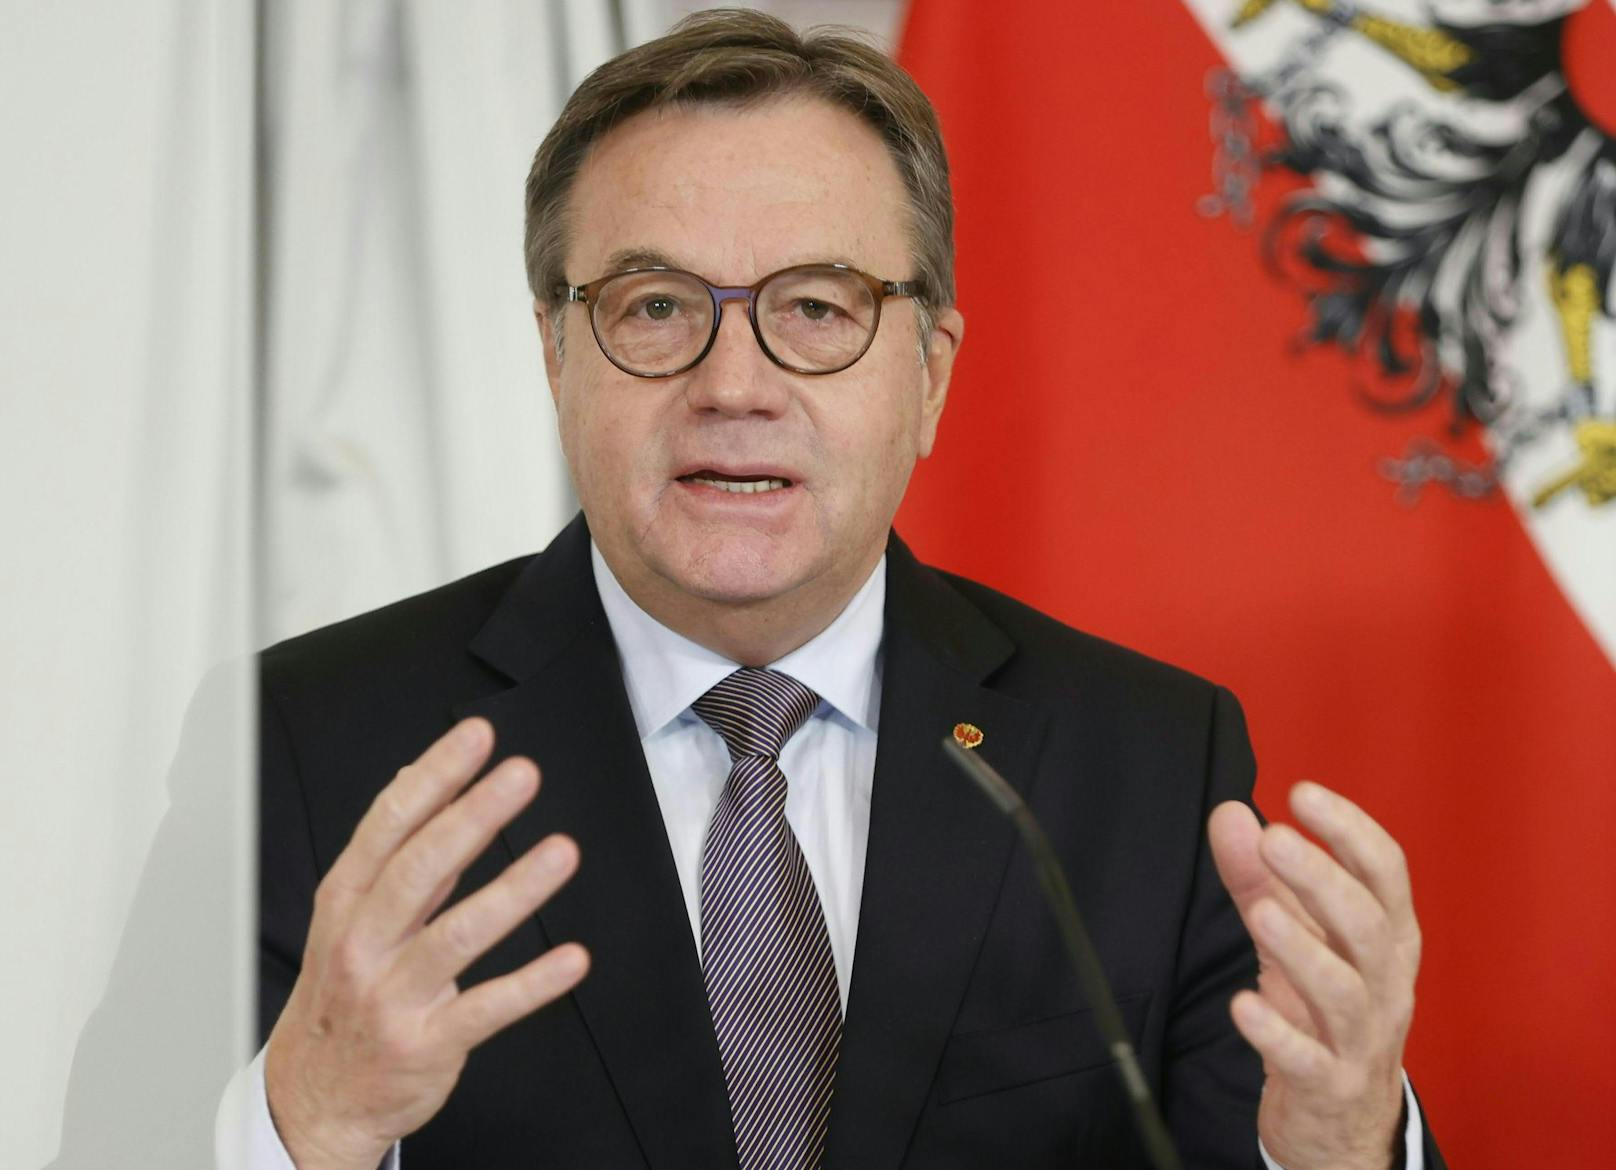 Tirols Landeschef Platter geht auf Konfrontation mit Deutschland. 